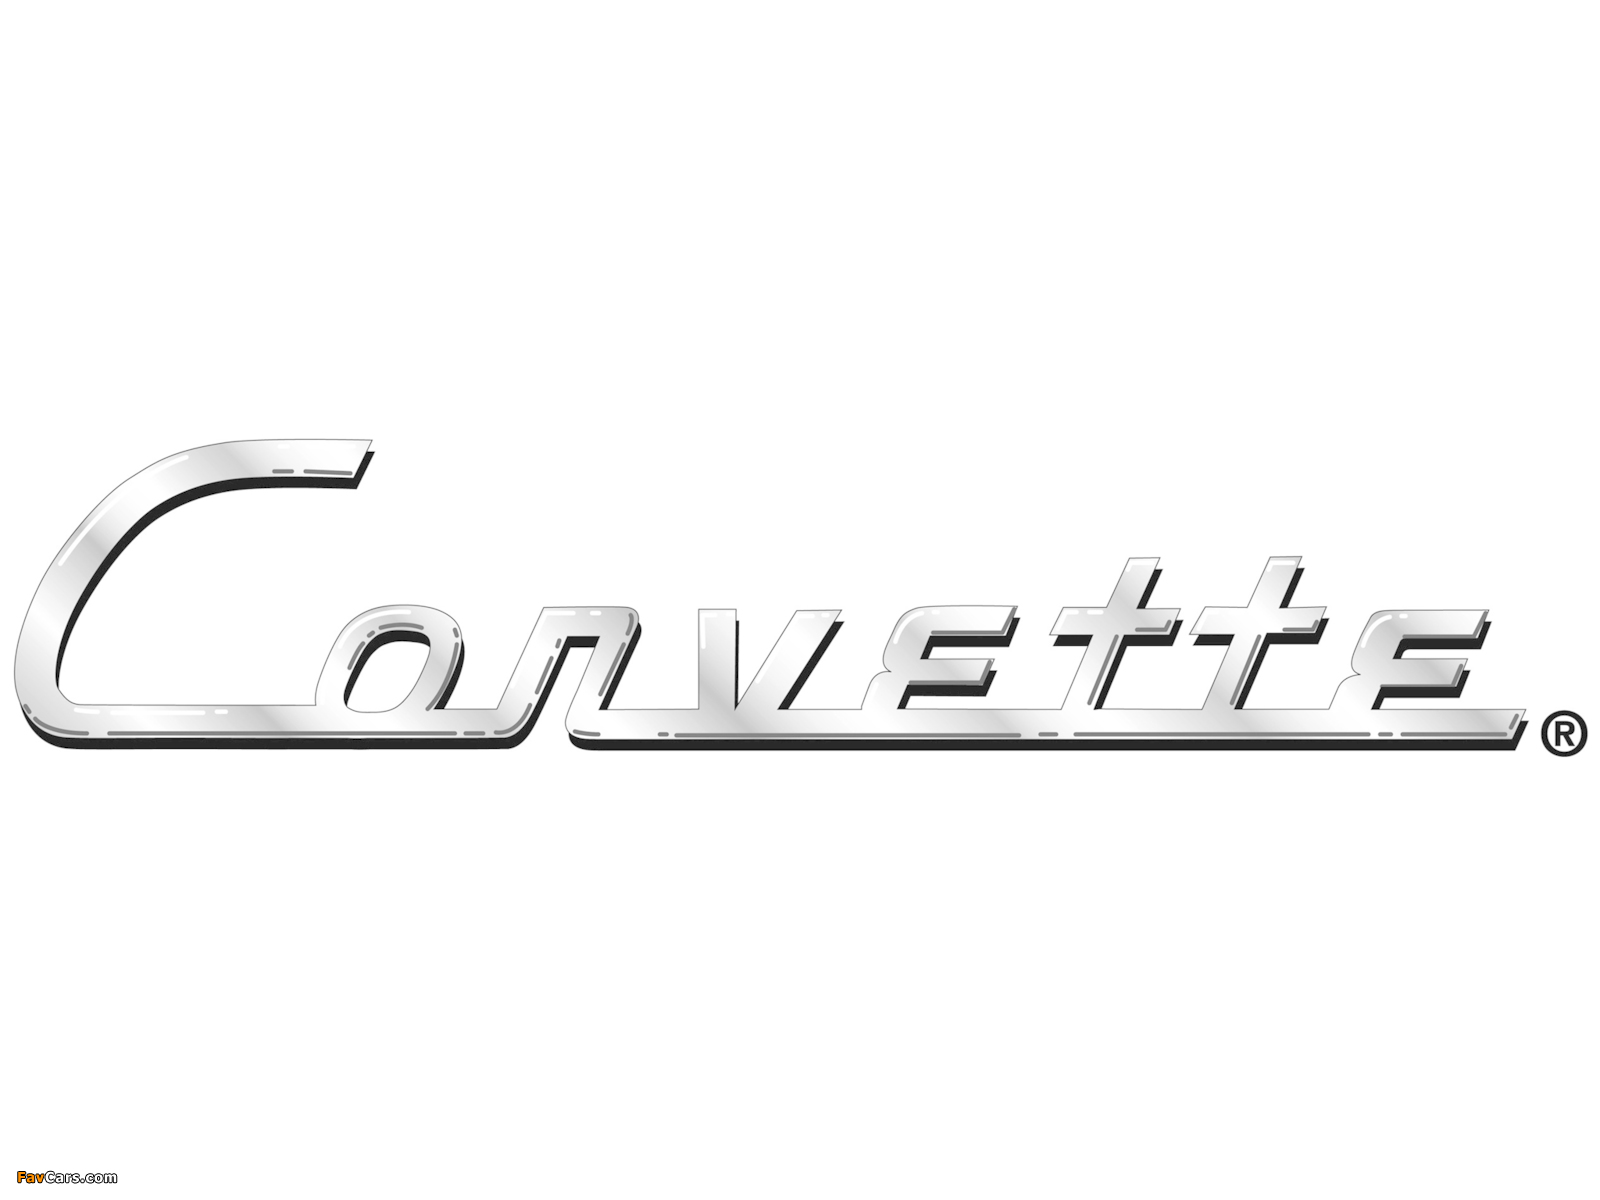 Corvette images (1600 x 1200)